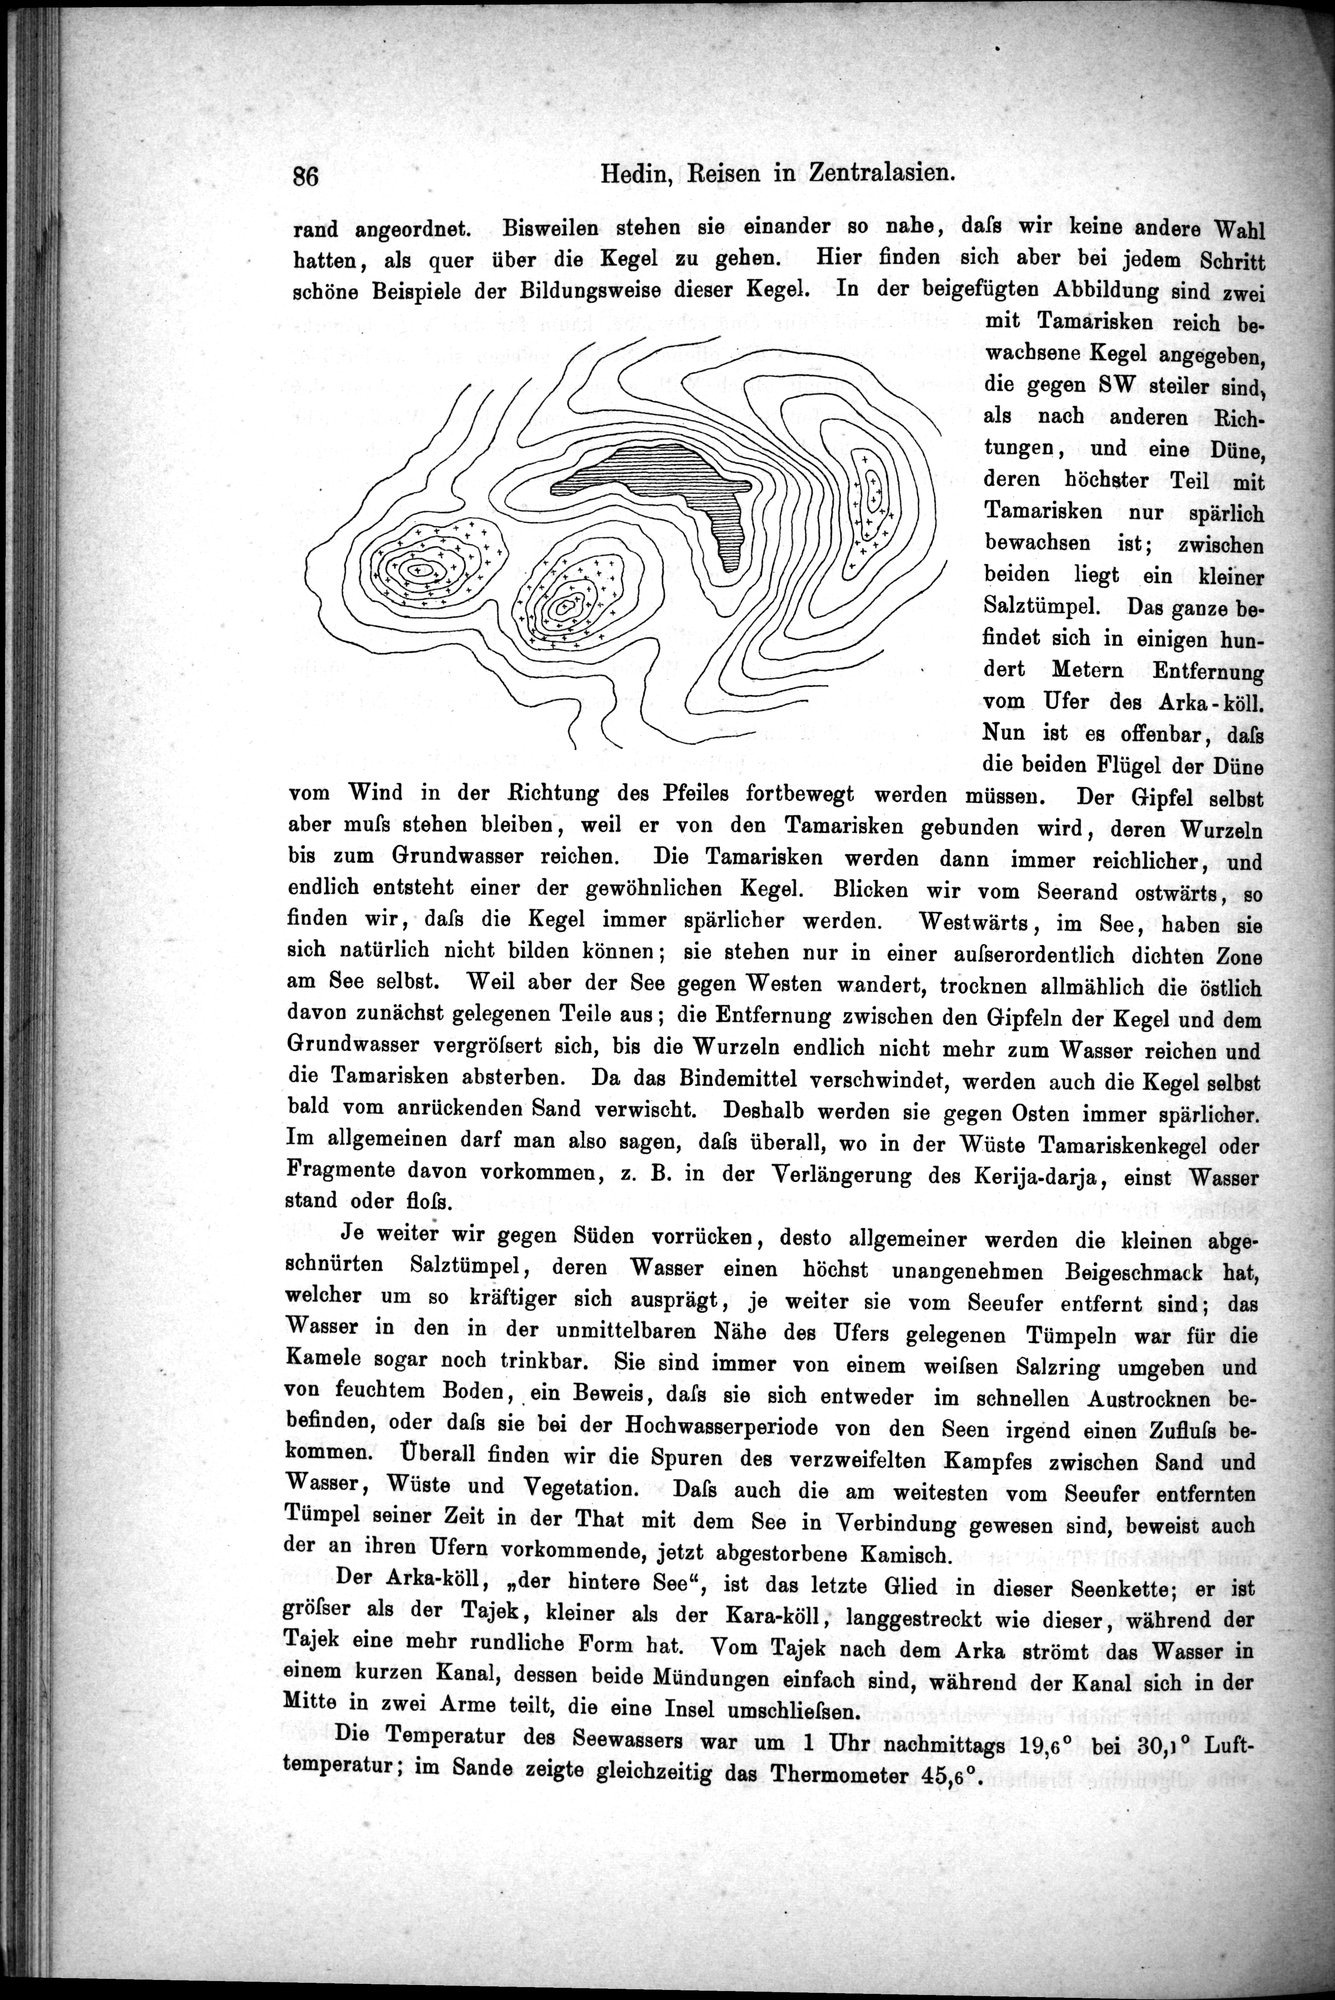 Die Geographische-Wissenschaftlichen Ergebnisse meiner Reisen in Zentralasien, 1894-1897 : vol.1 / Page 98 (Grayscale High Resolution Image)